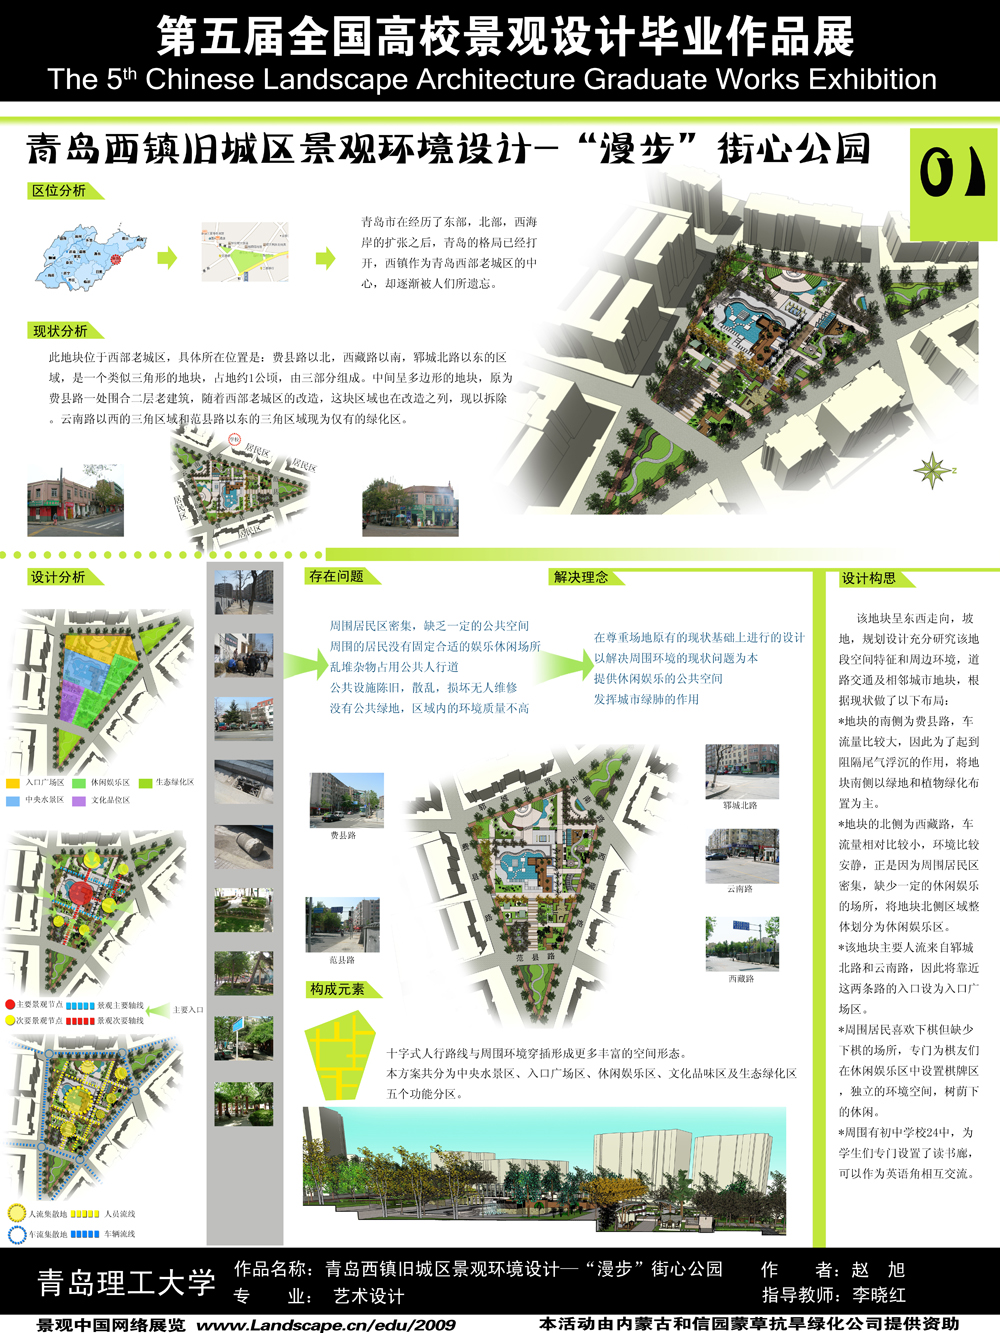 青岛西镇旧城区景观环境设计—“漫步”街心公园-1